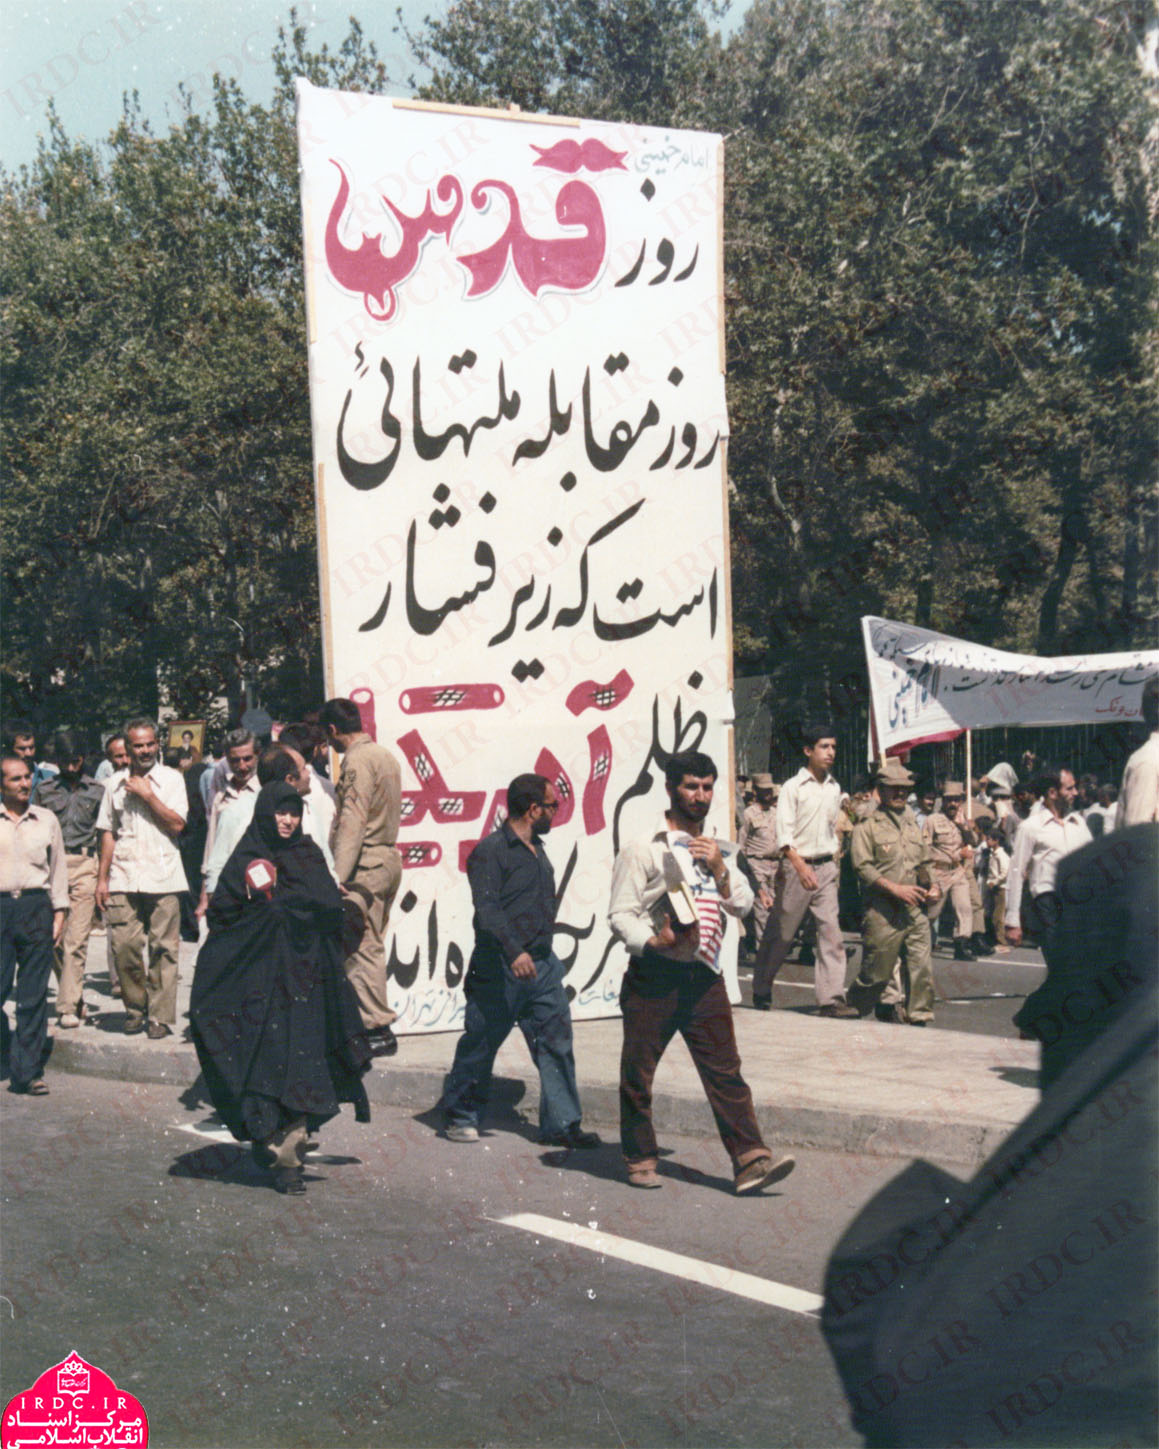 تصاویری از راهپیمایی روز قدس در دهه اول انقلاب